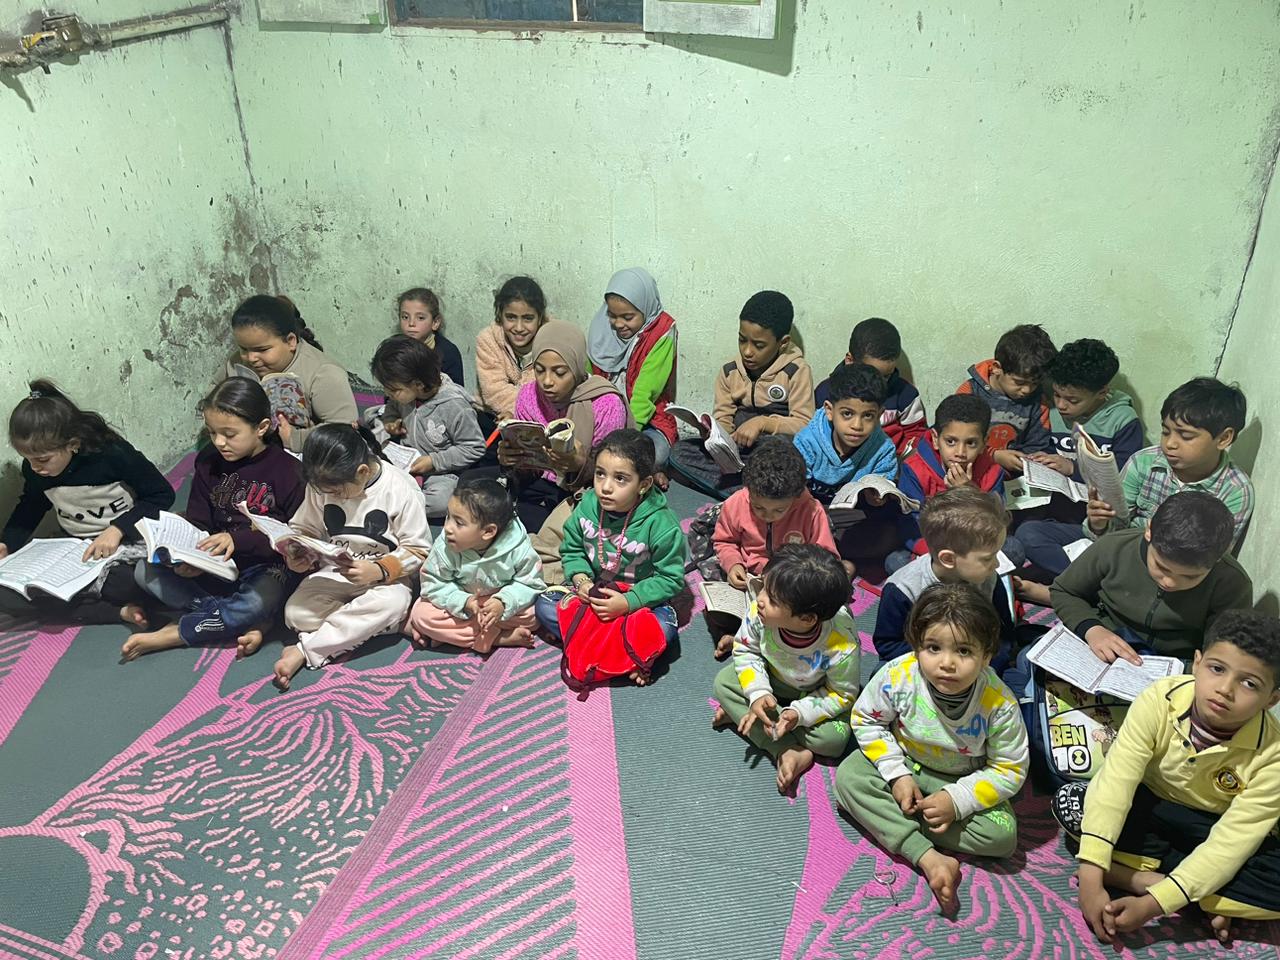 عشرات الأطفال فى مراحل عمرية مختلفة يحفظون القرآن فى الكتاتيب